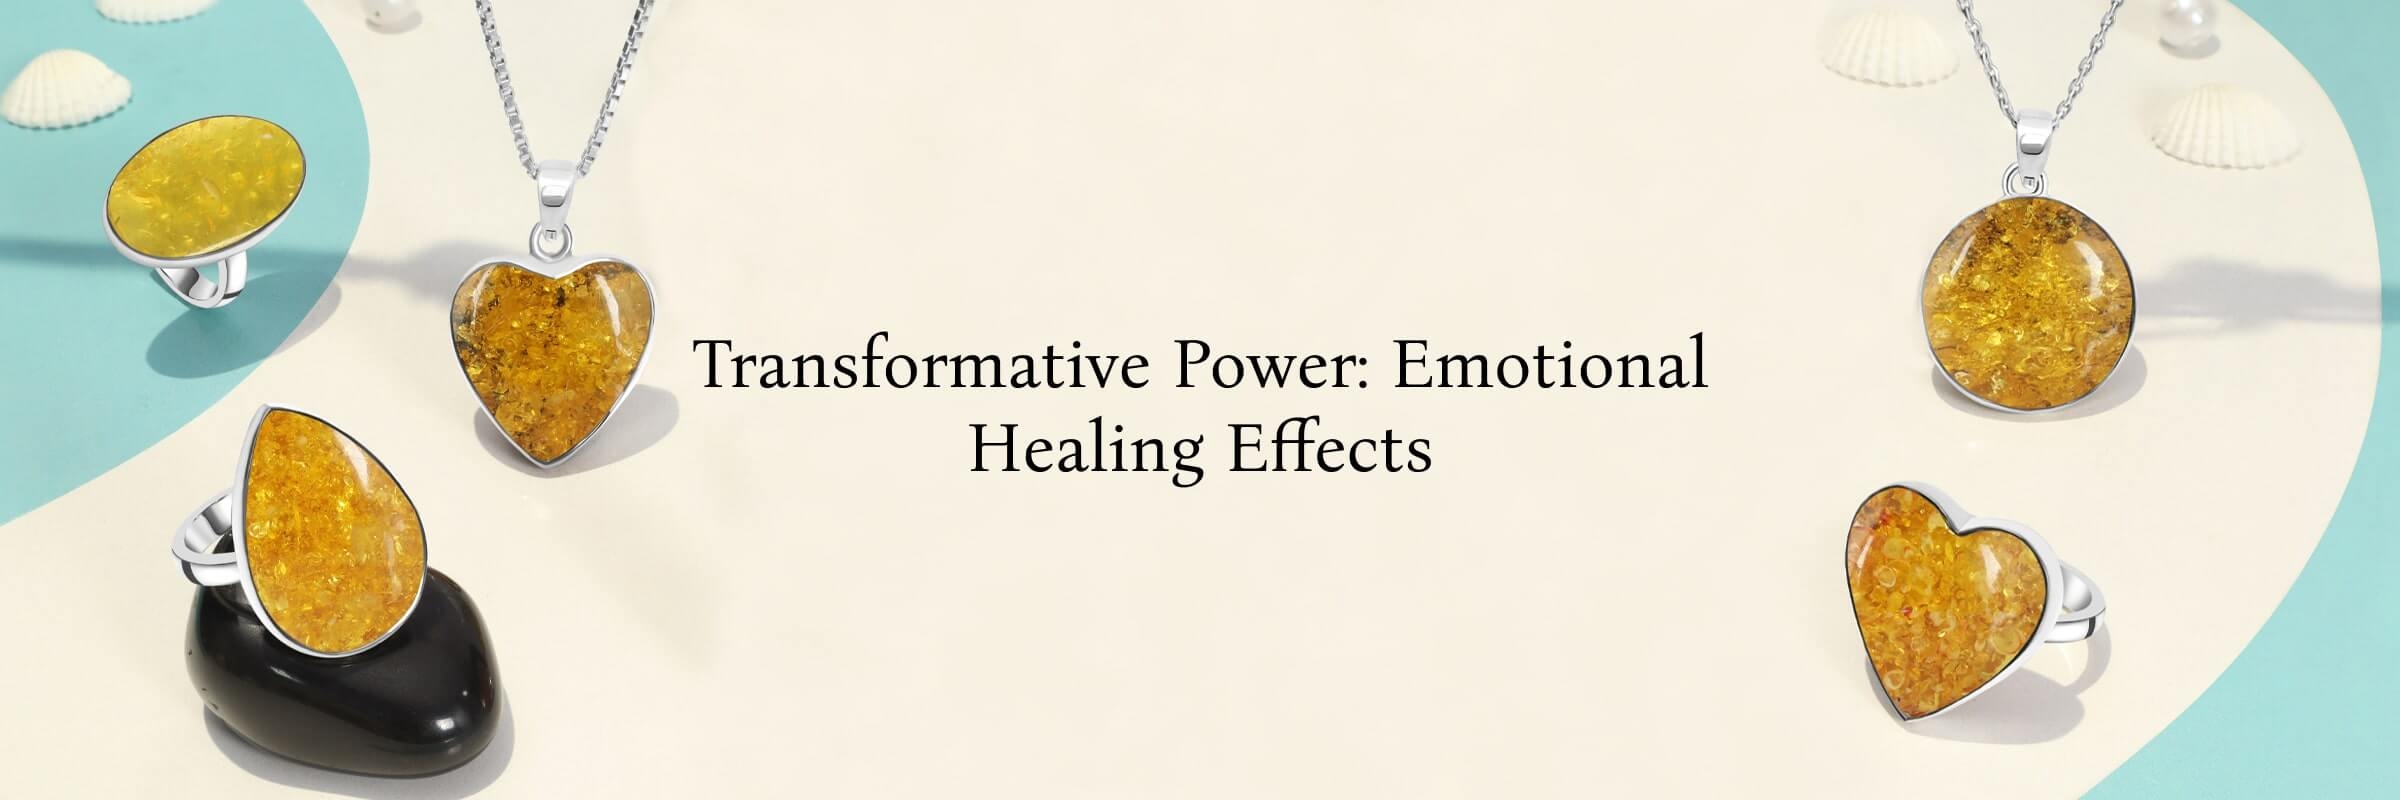 Mental & Emotional Healing